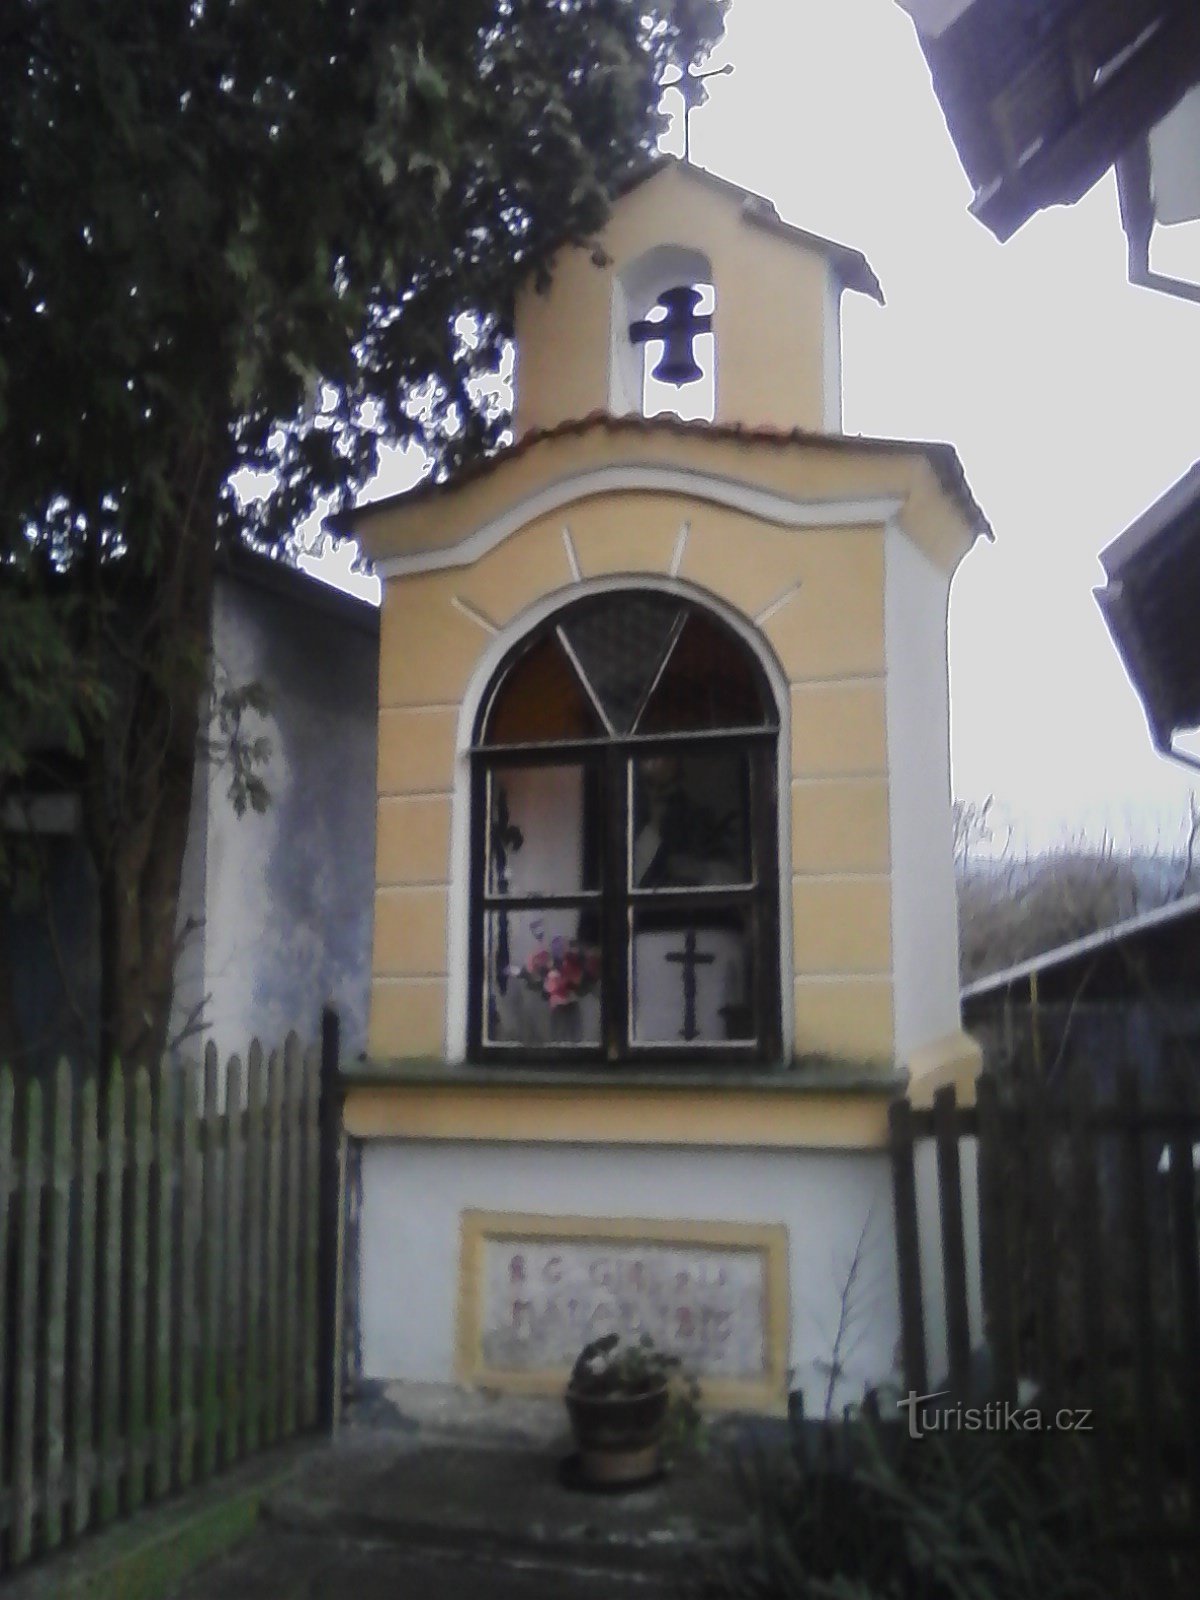 2. O capelă mică de nișă în Lidkovice cu o clopotniță și o cruce cu două brațe în v